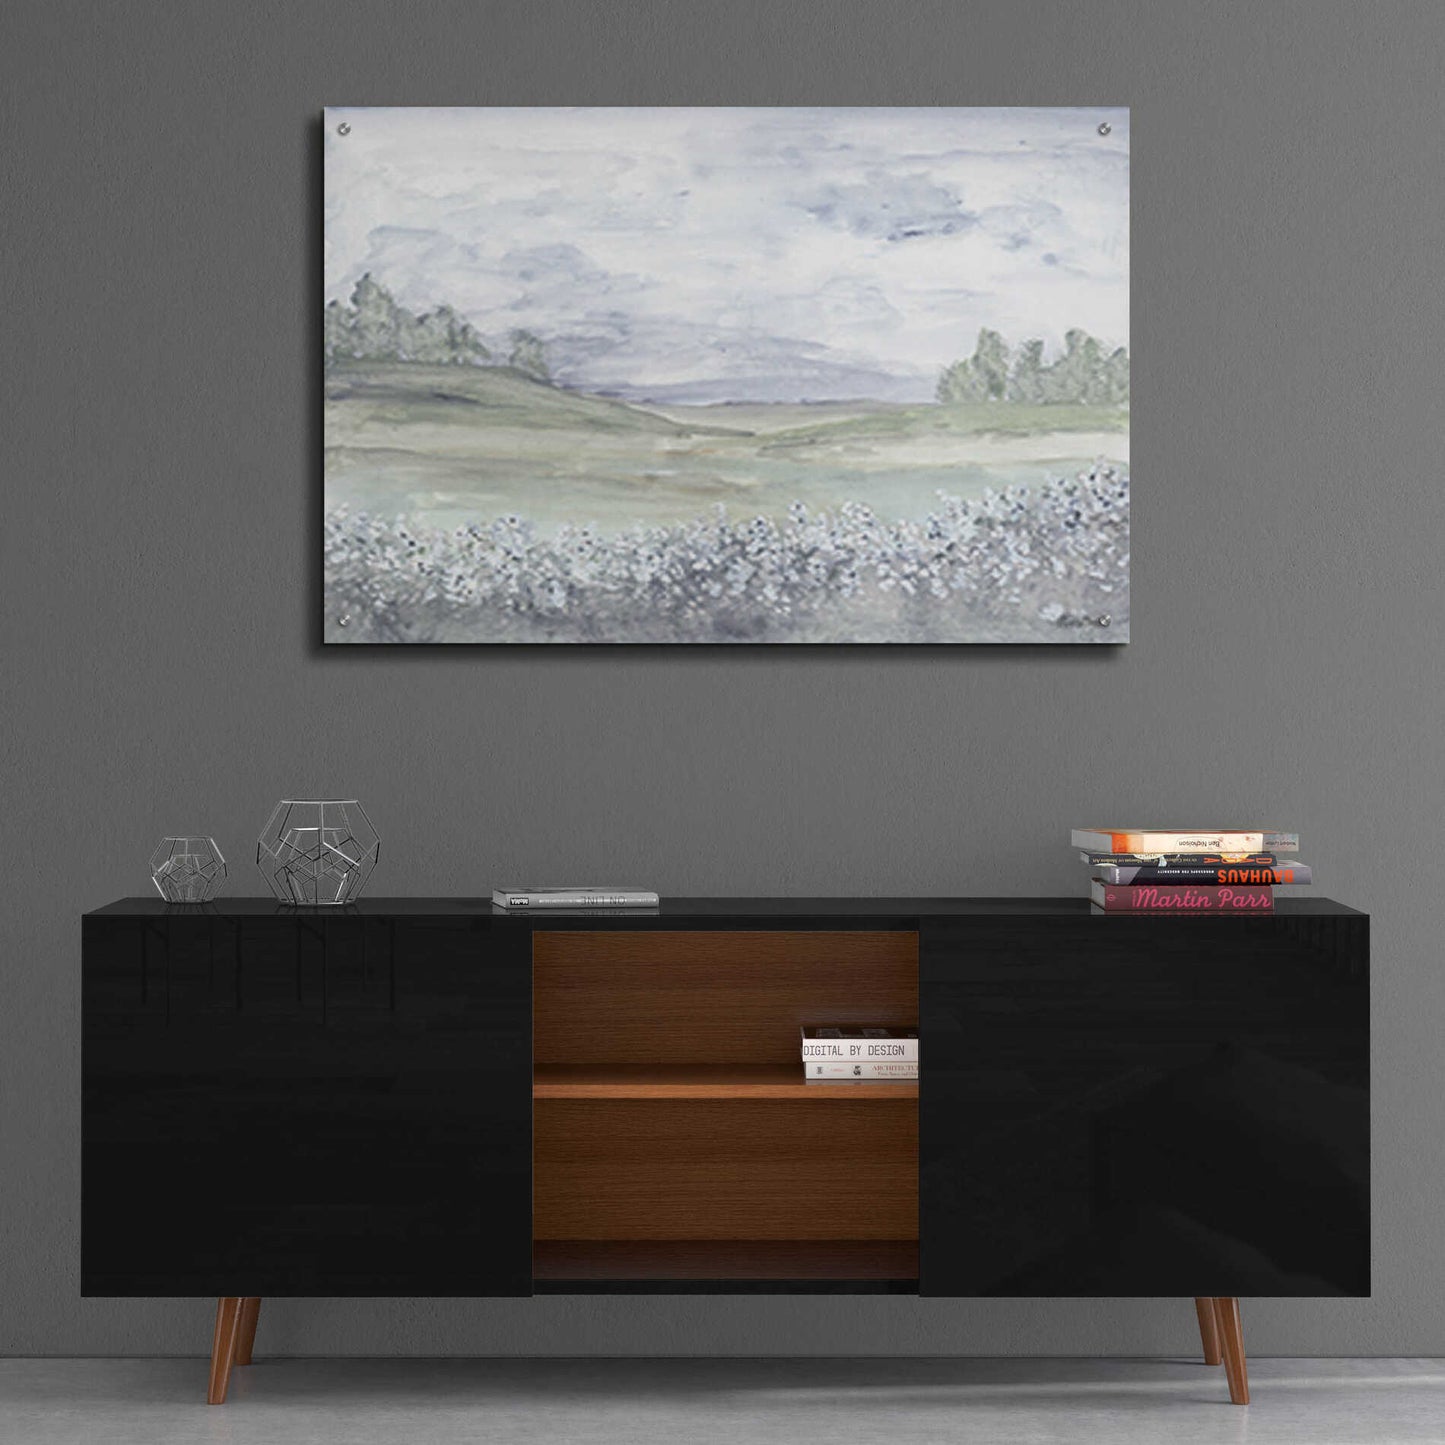 Epic Art 'Meadow' by Roey Ebert, Acrylic Glass Wall Art,36x24